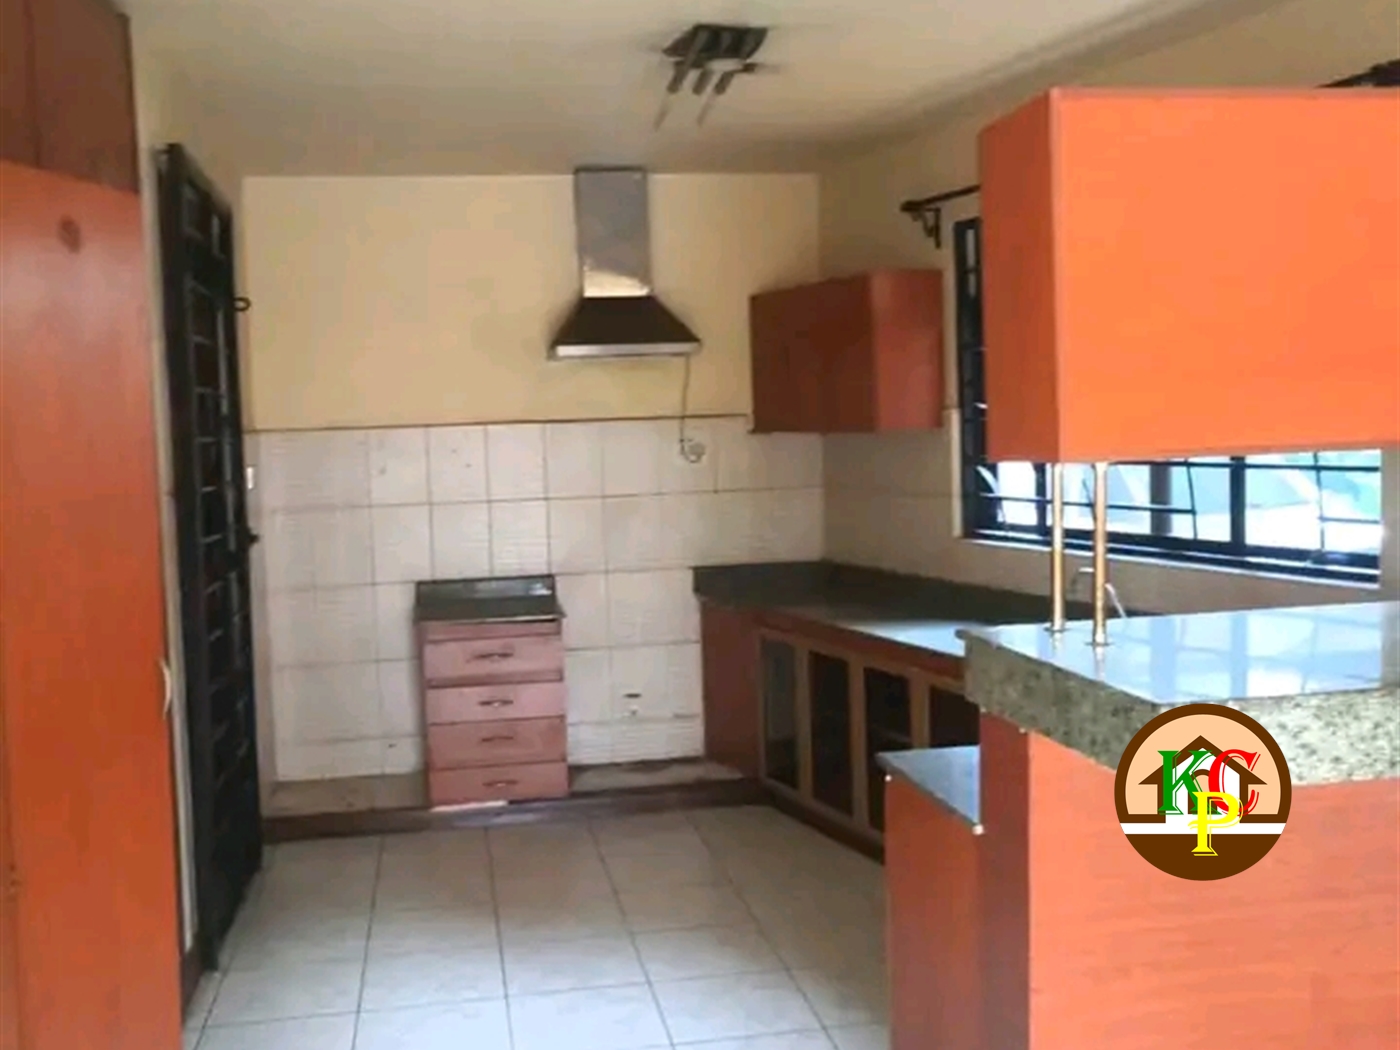 Storeyed house for rent in Lugogo Kampala